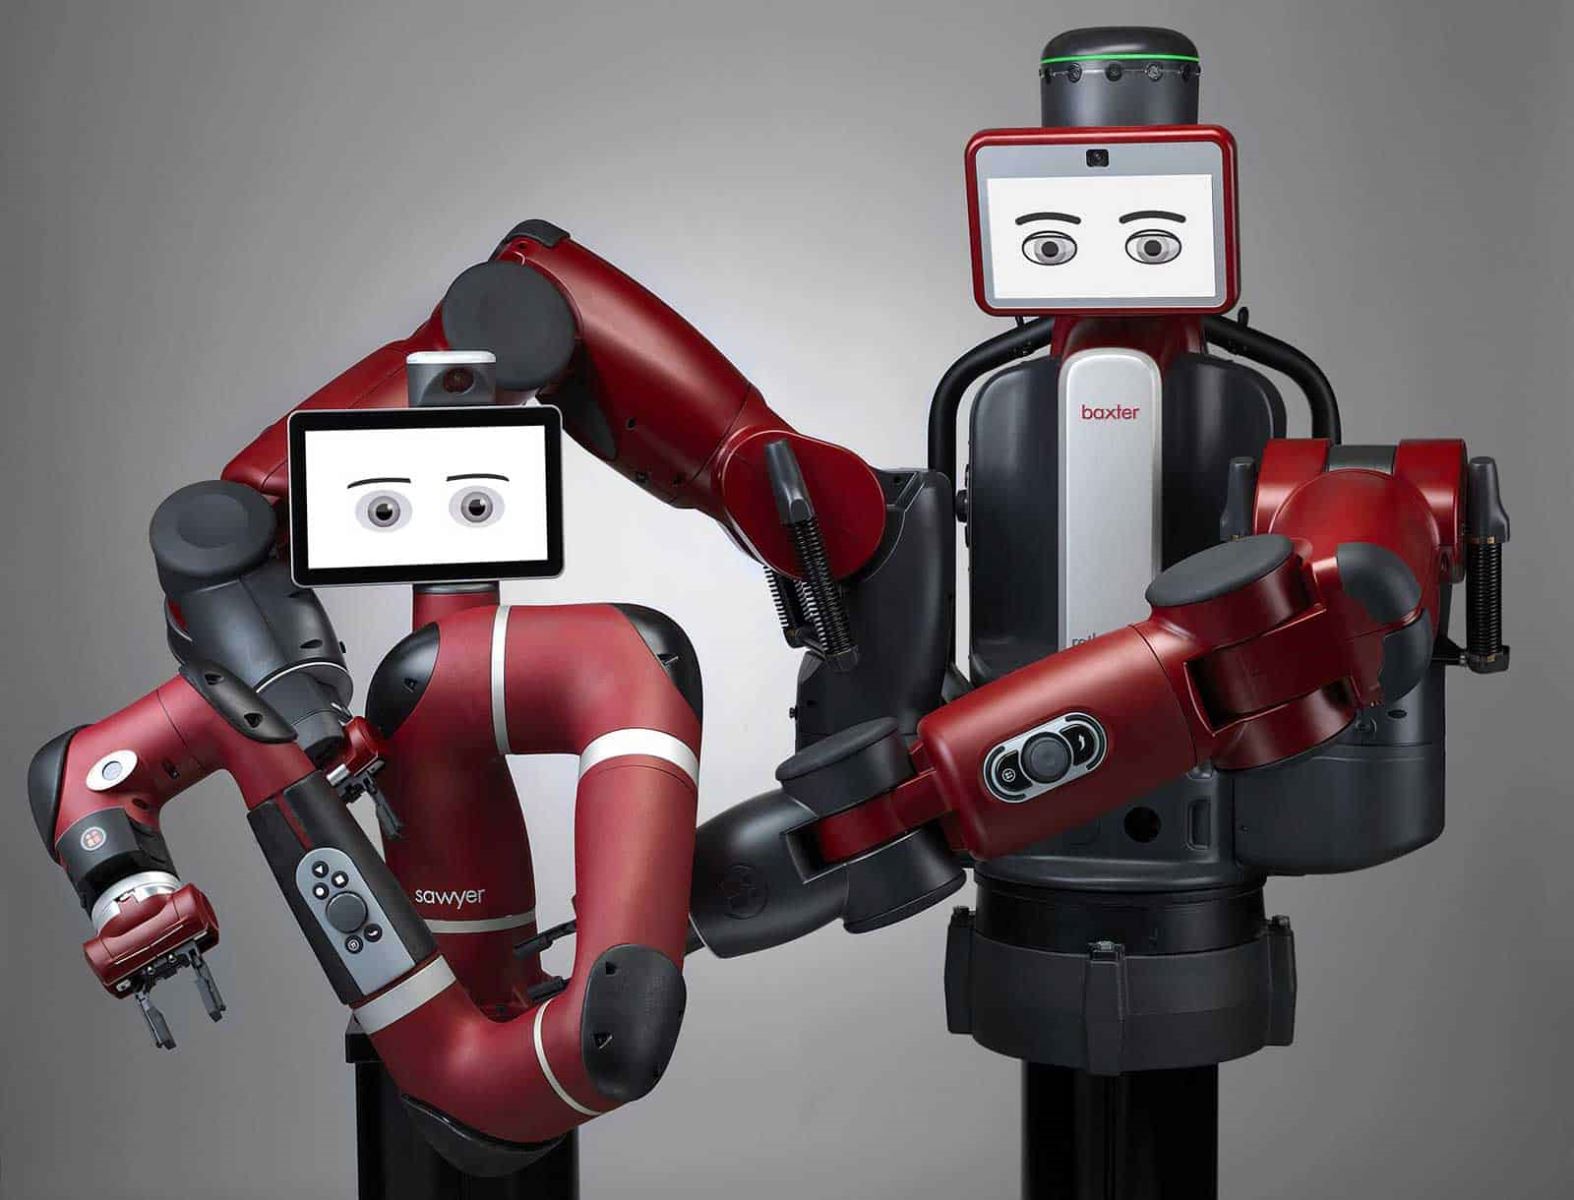 Câu chuyện thất bại của startup Rethink Robotics 2 - Khởi Nghiệp Trẻ